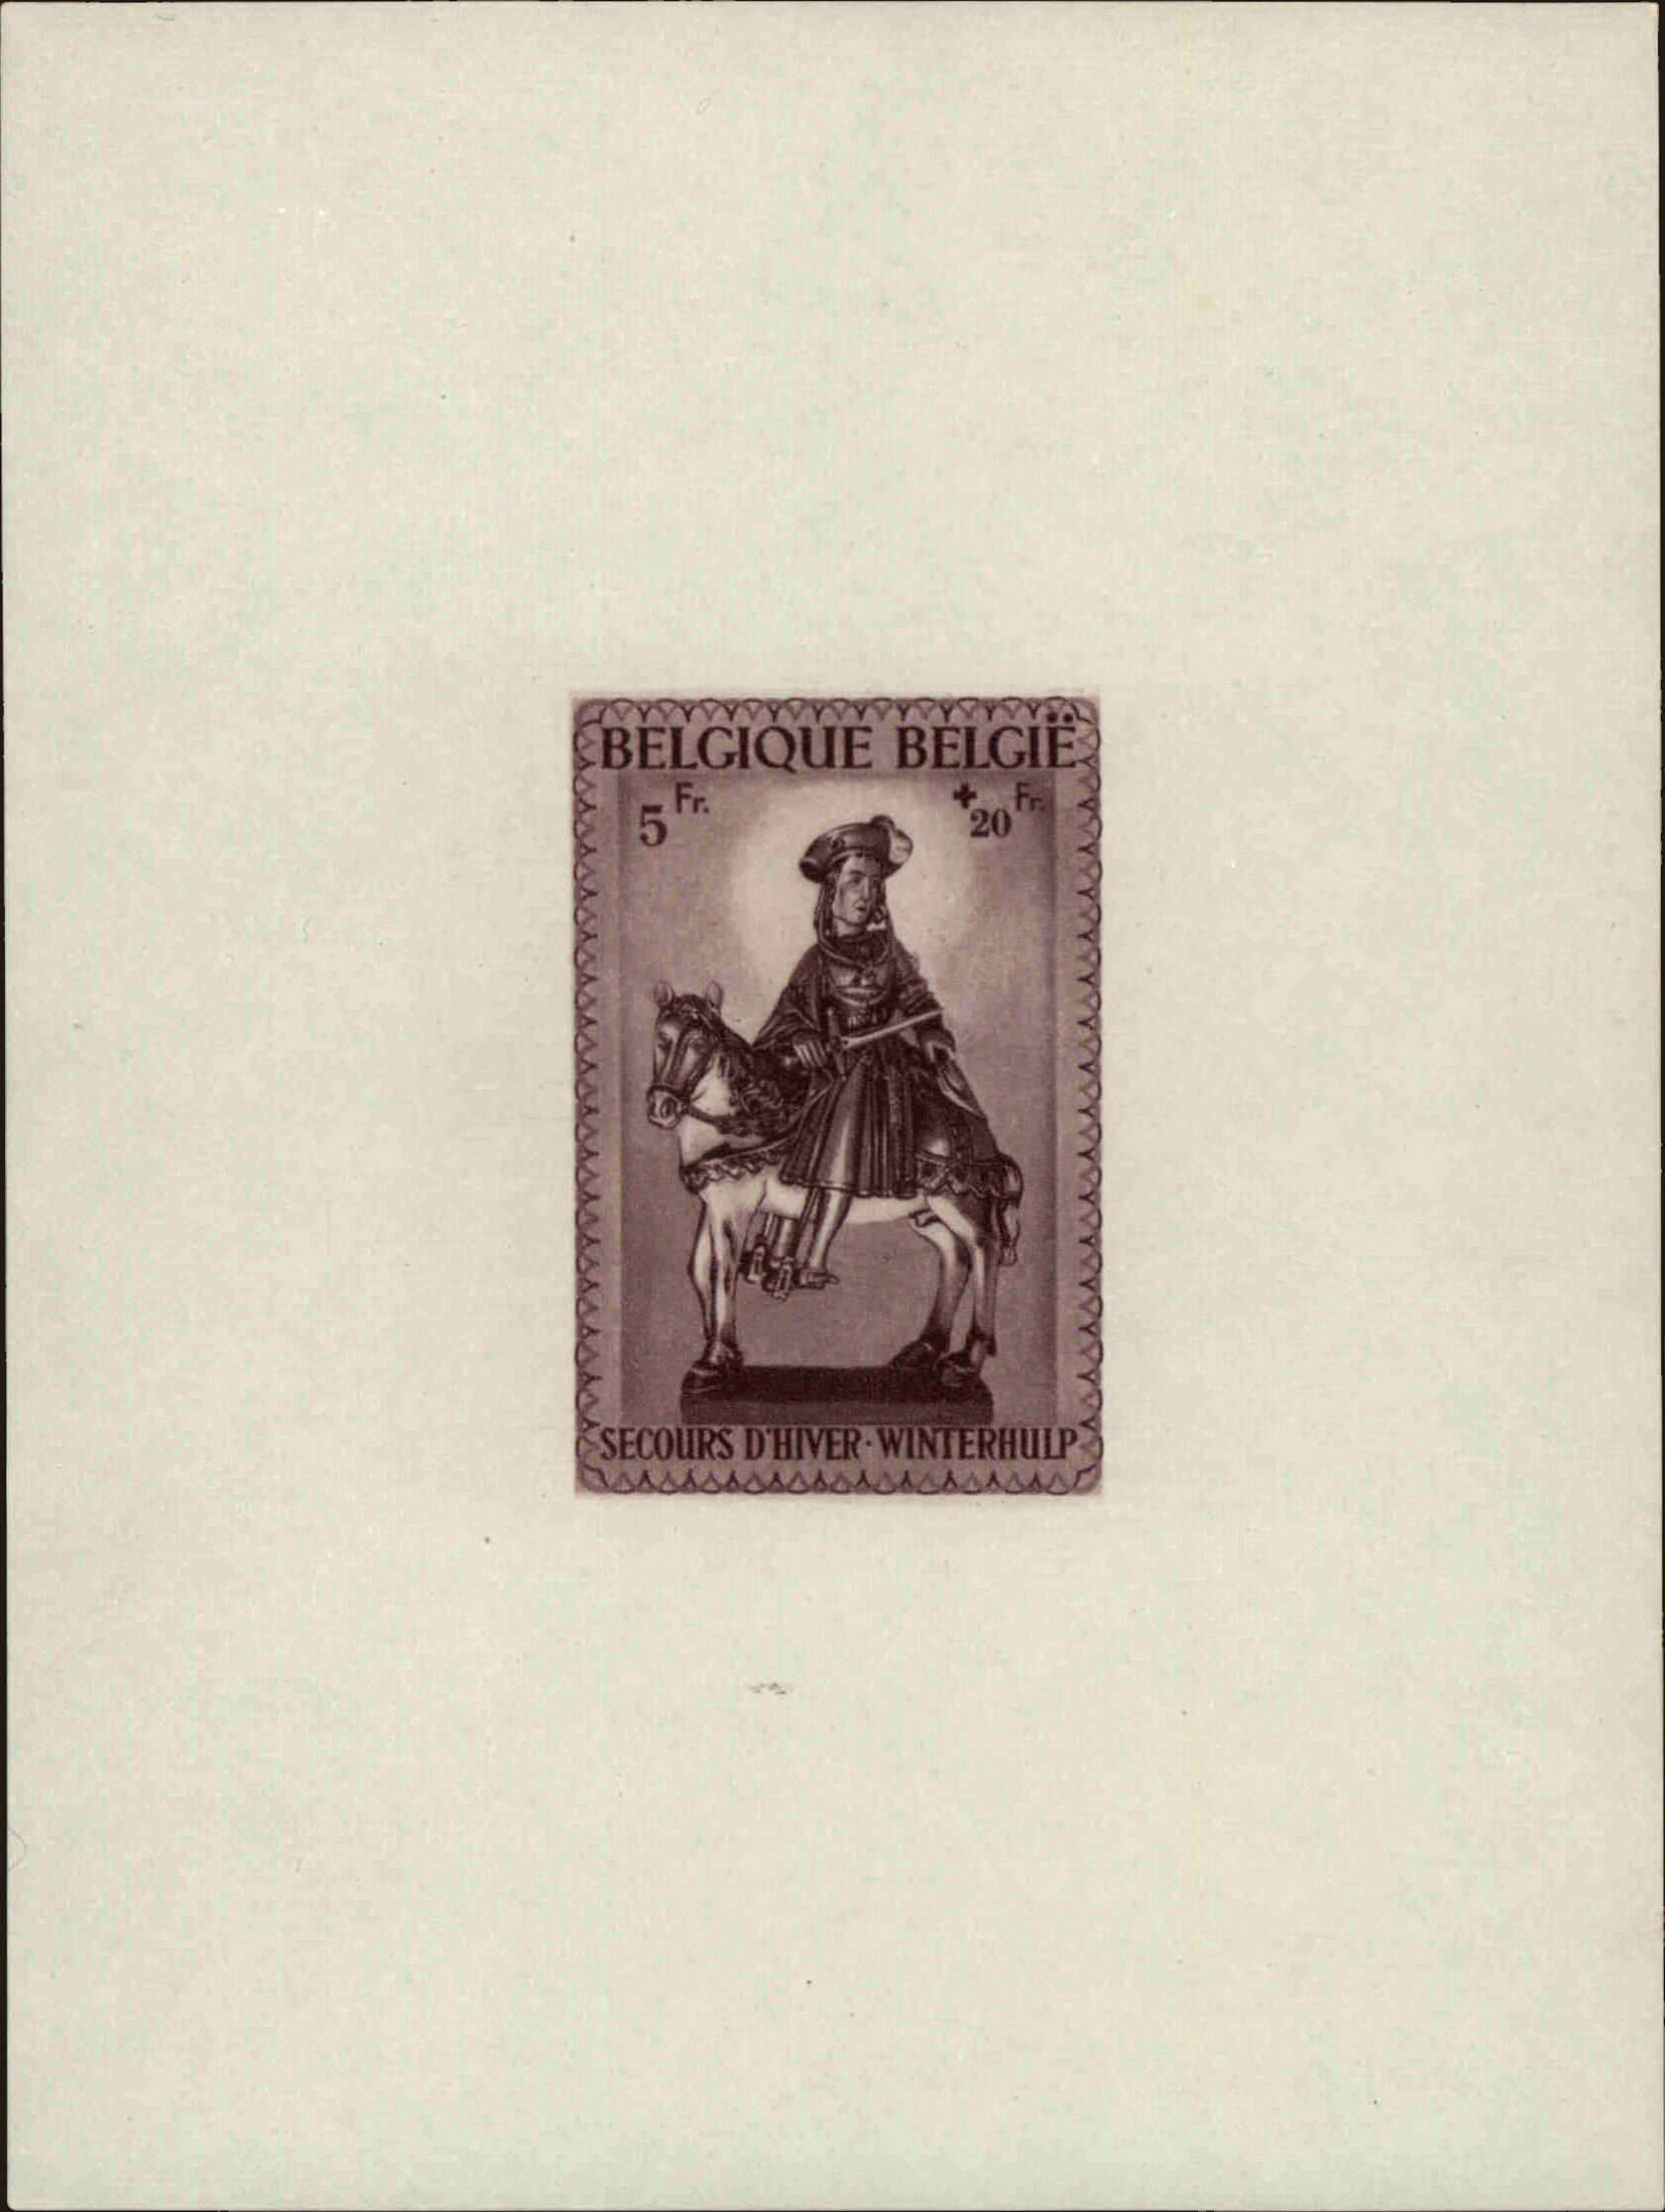 Front view of Belgium B316 collectors stamp